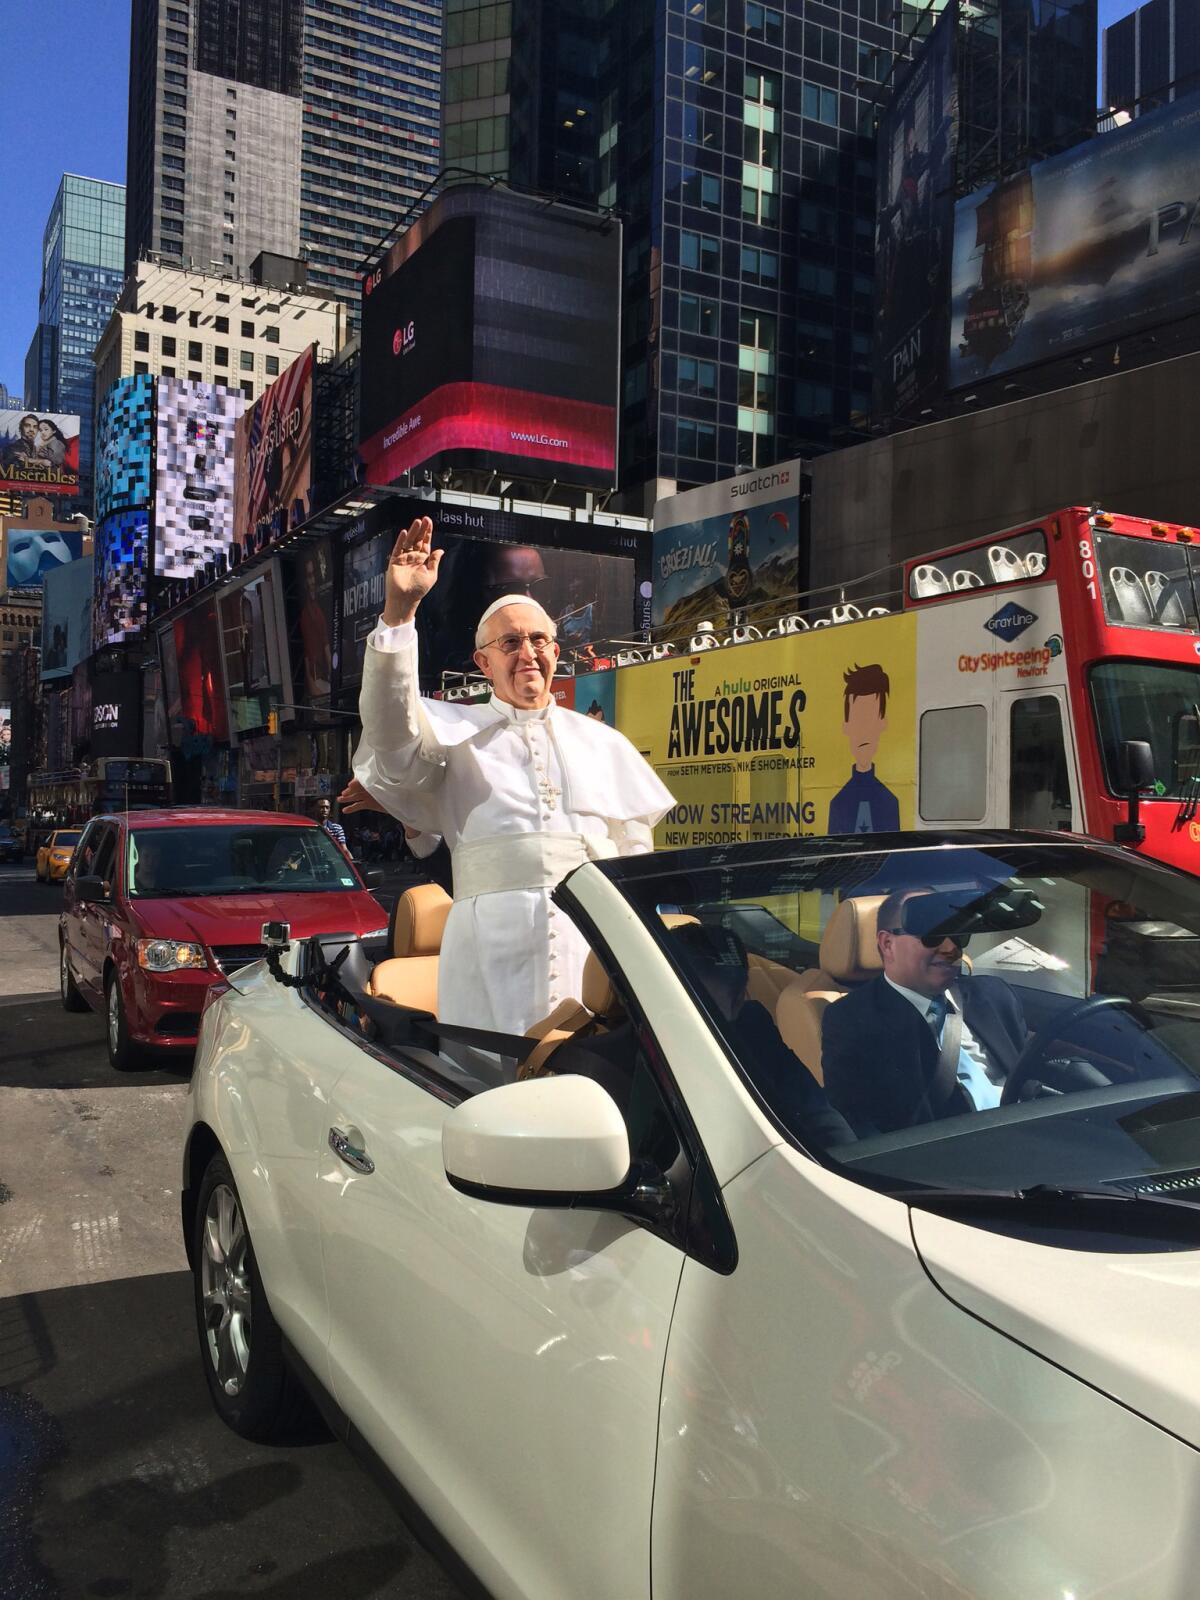 Figura de cera del papa Francisco a su llegada al Museo Madame Tassaud de Nueva York el 24 de septiembre del 2015. Mucha gente pensó que era el verdadero papa. (Cortesía de Hillary Karsten via AP)